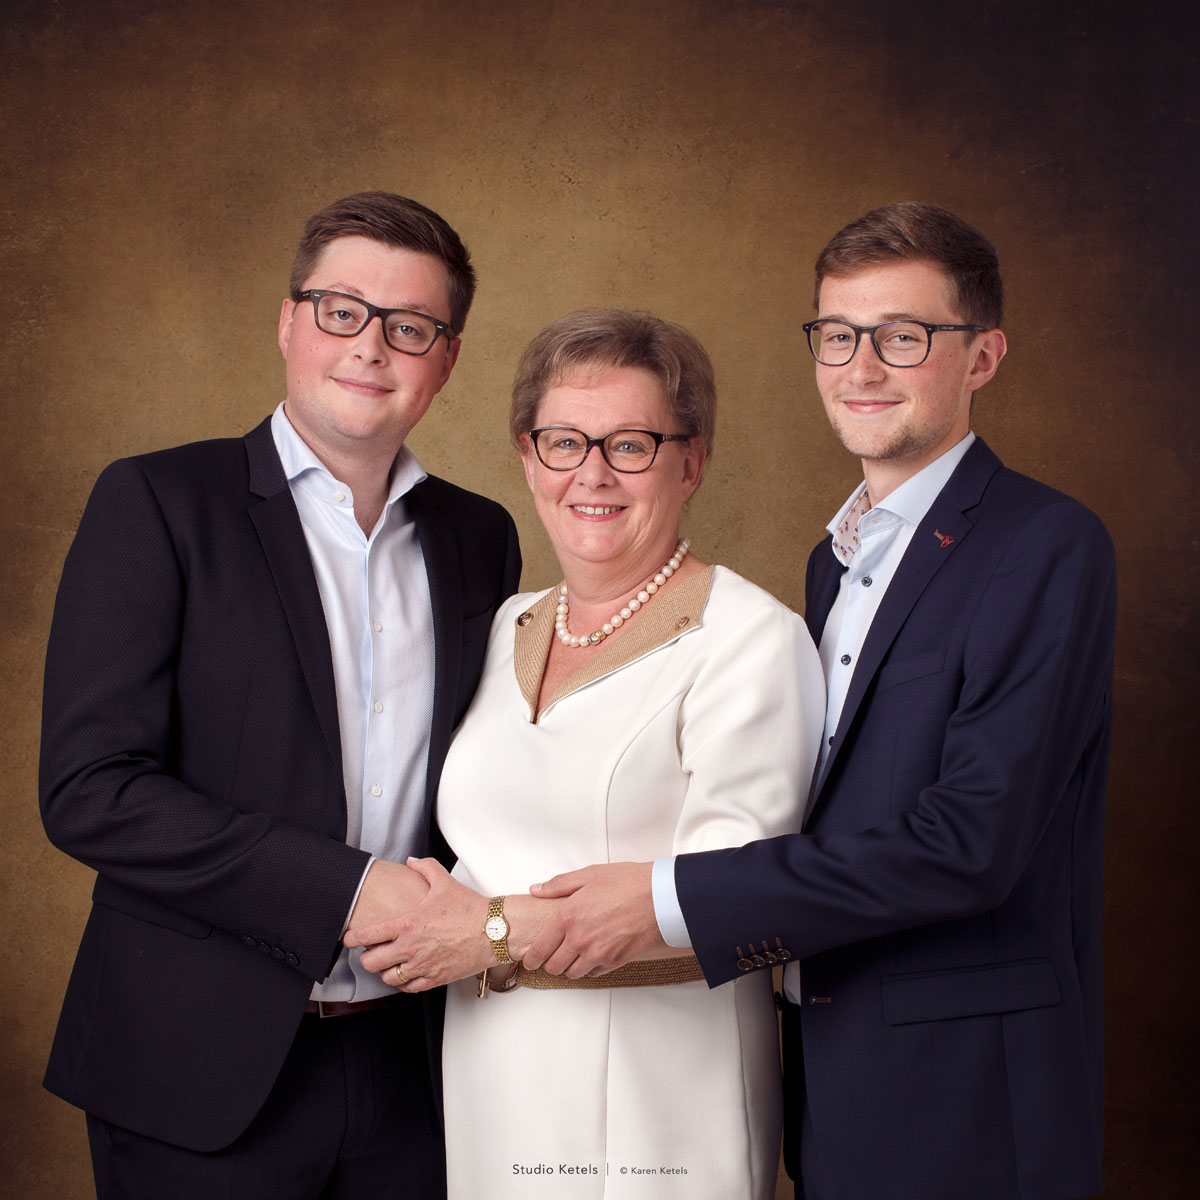 portret moeder met 2 zonen door Studio Ketels